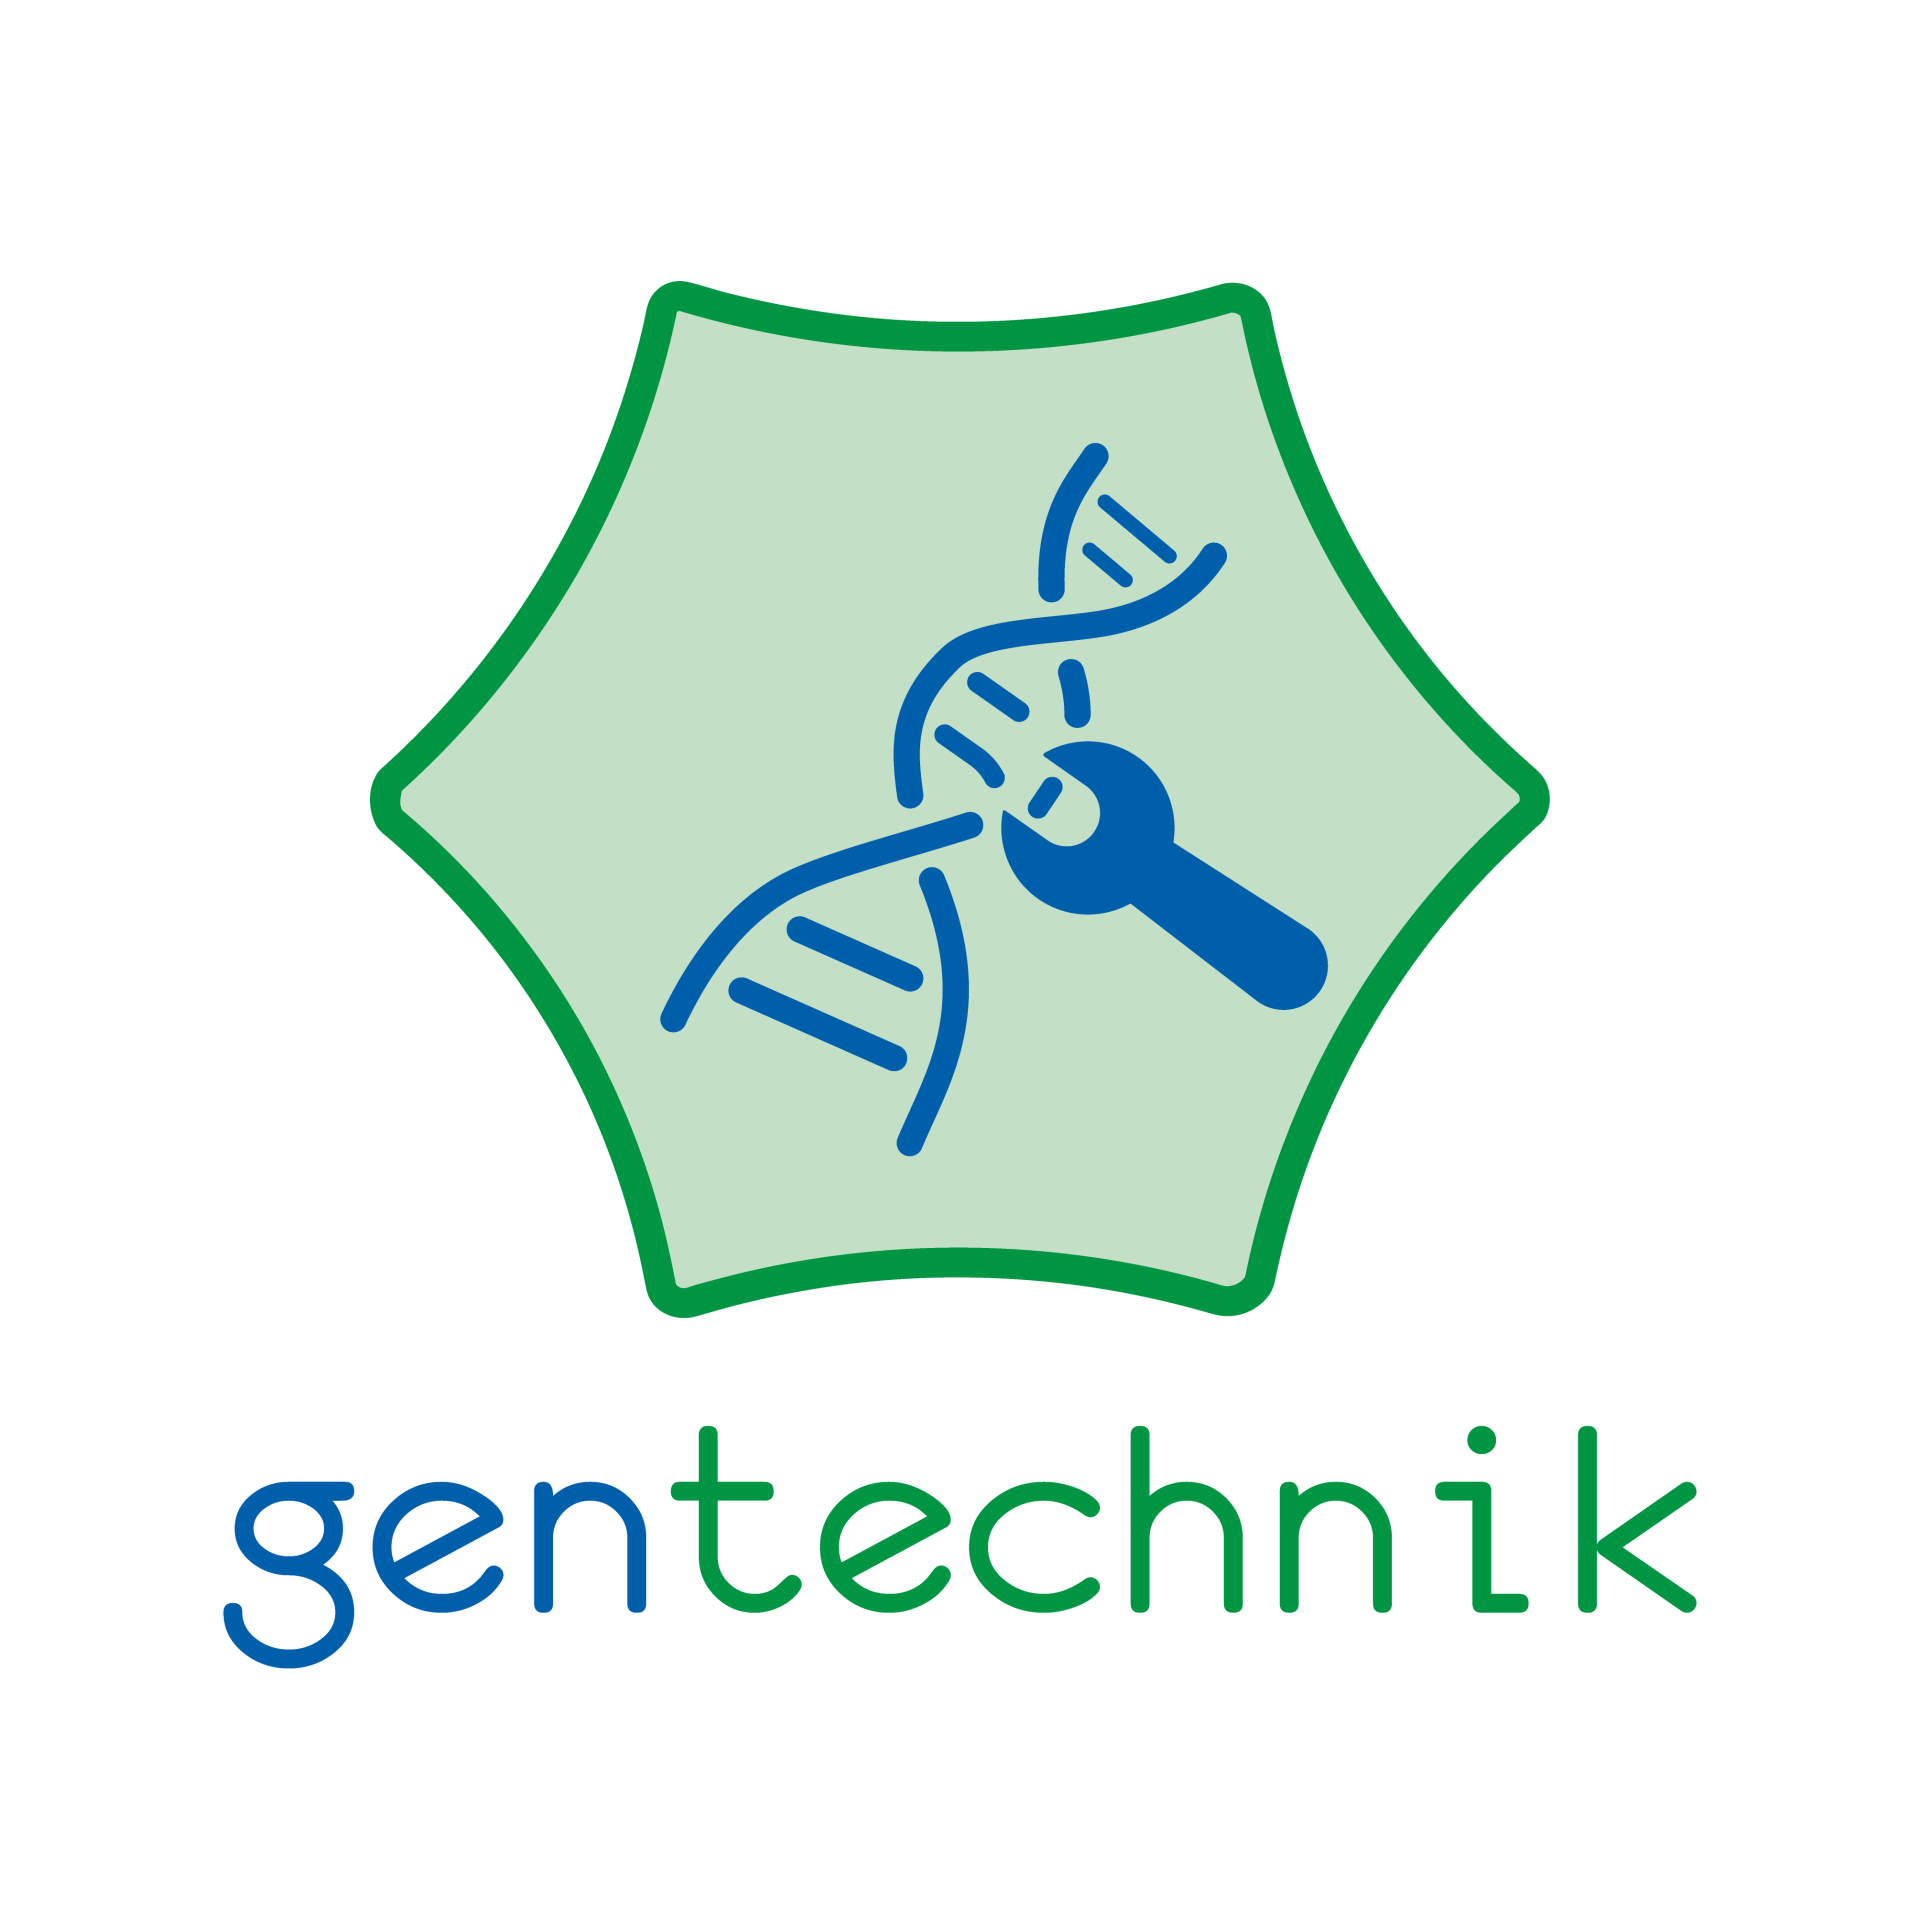 blaubiologie - gentechnik